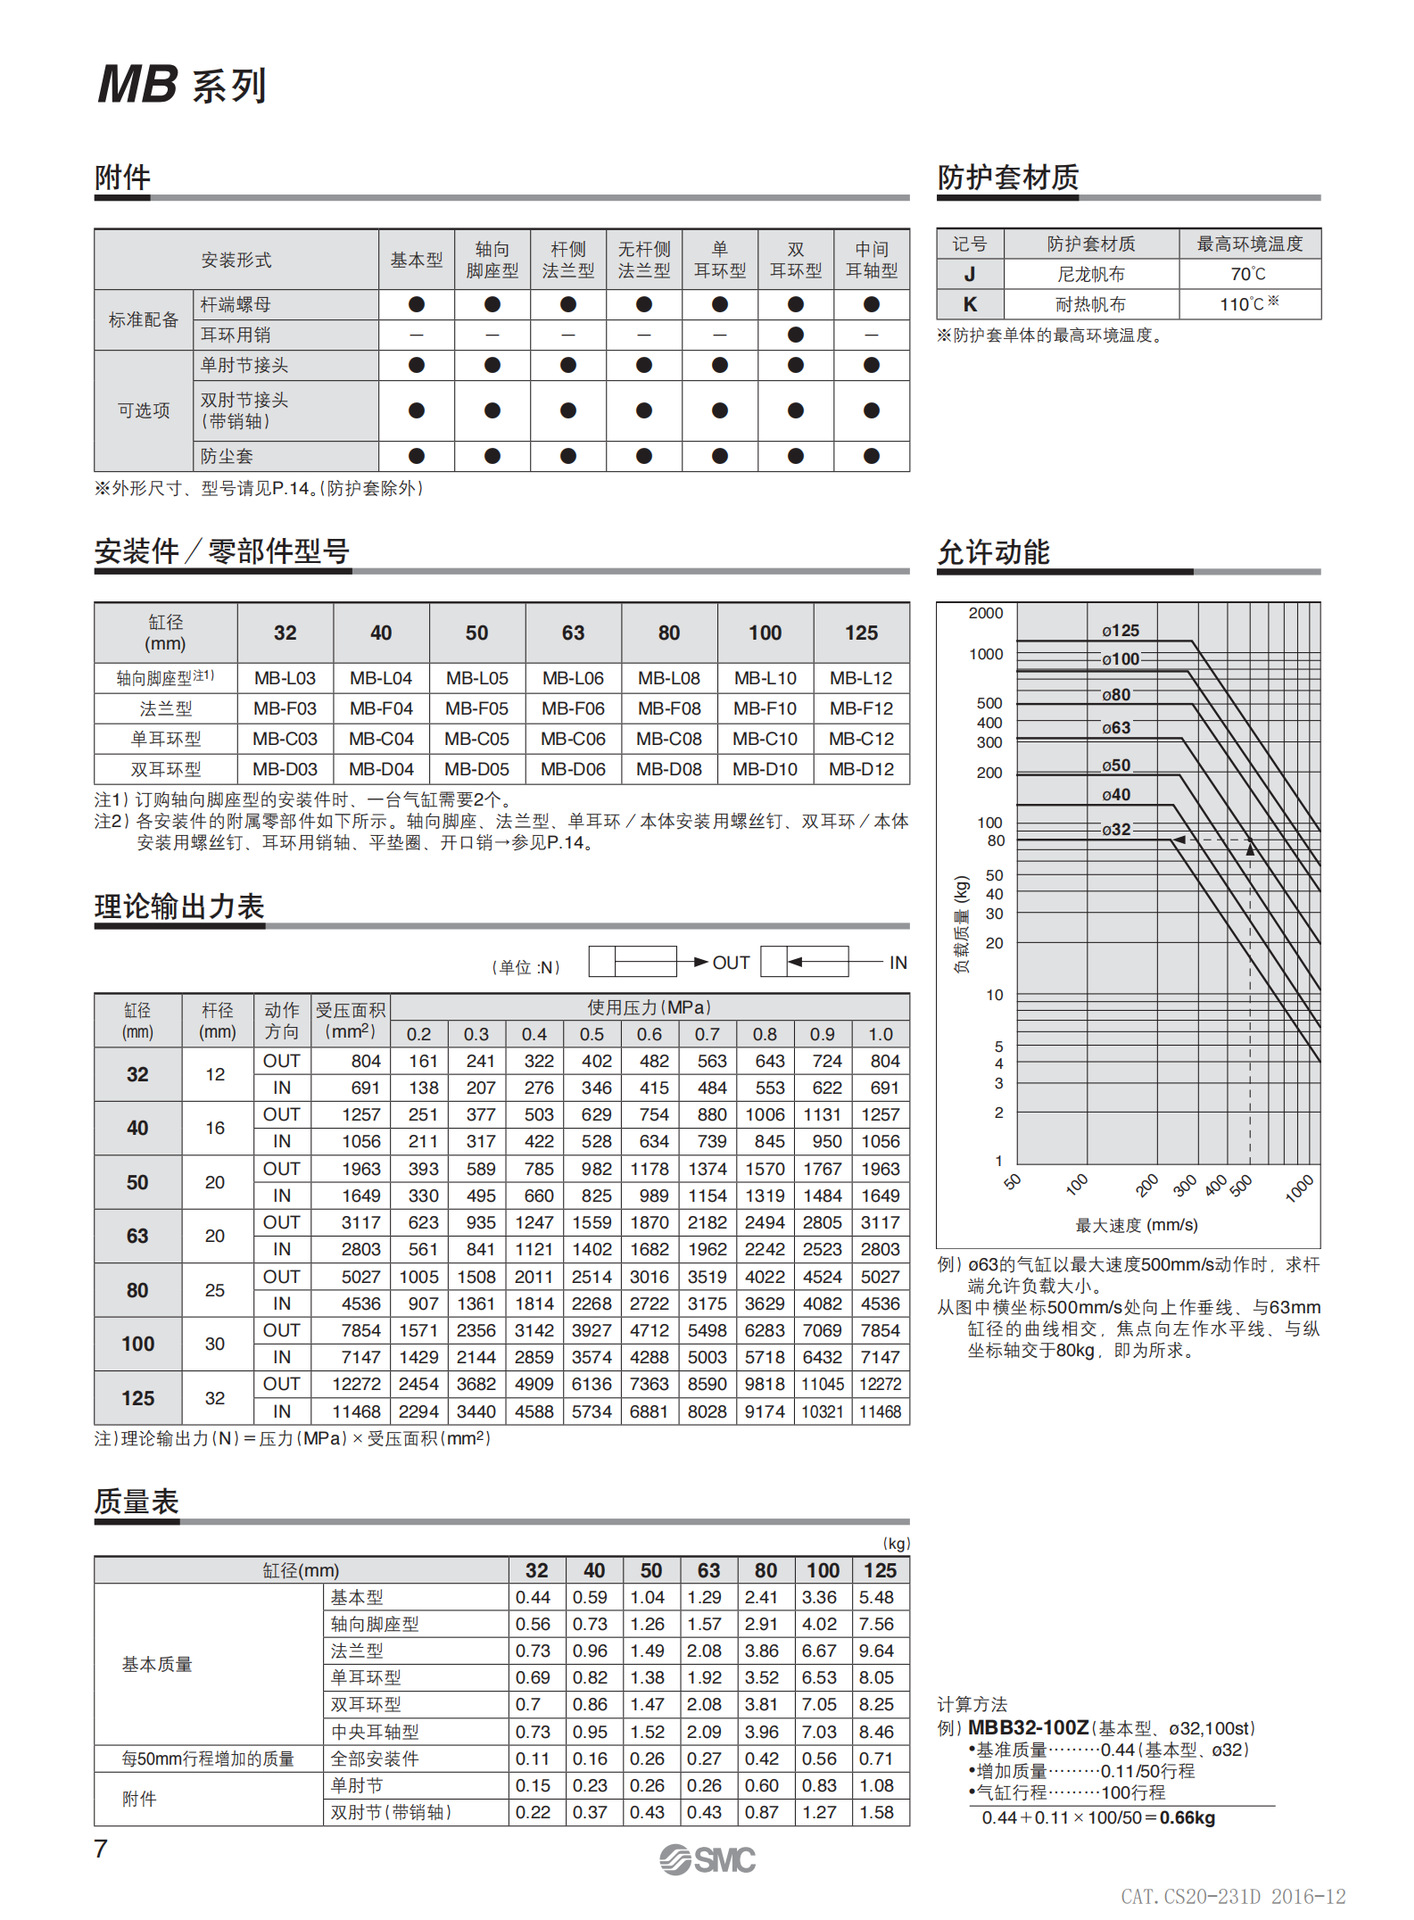 MB-Z-pdf(CN)_02